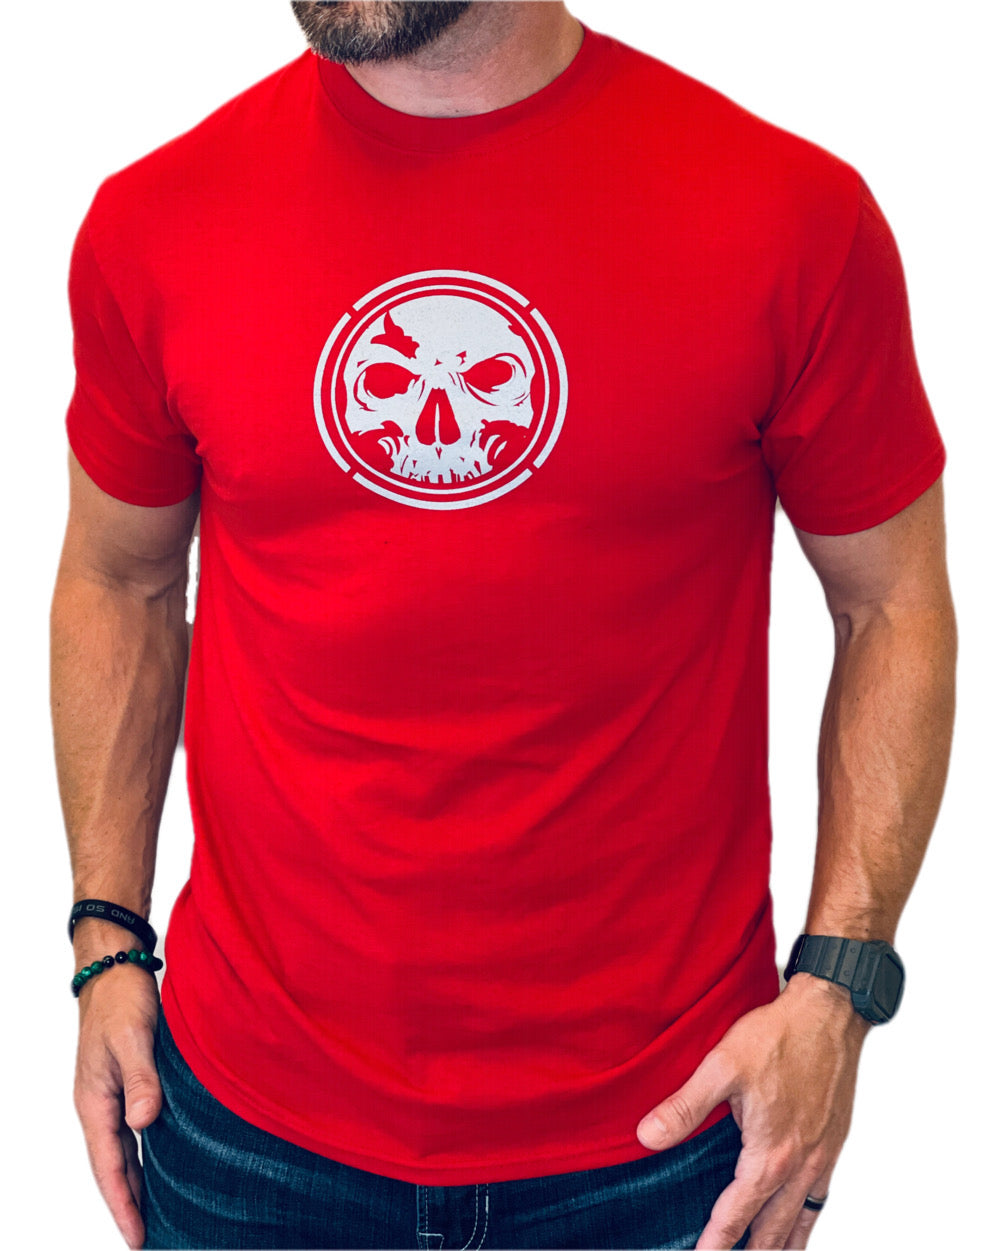 Men's Red Moisture Management T-Shirt 2.0